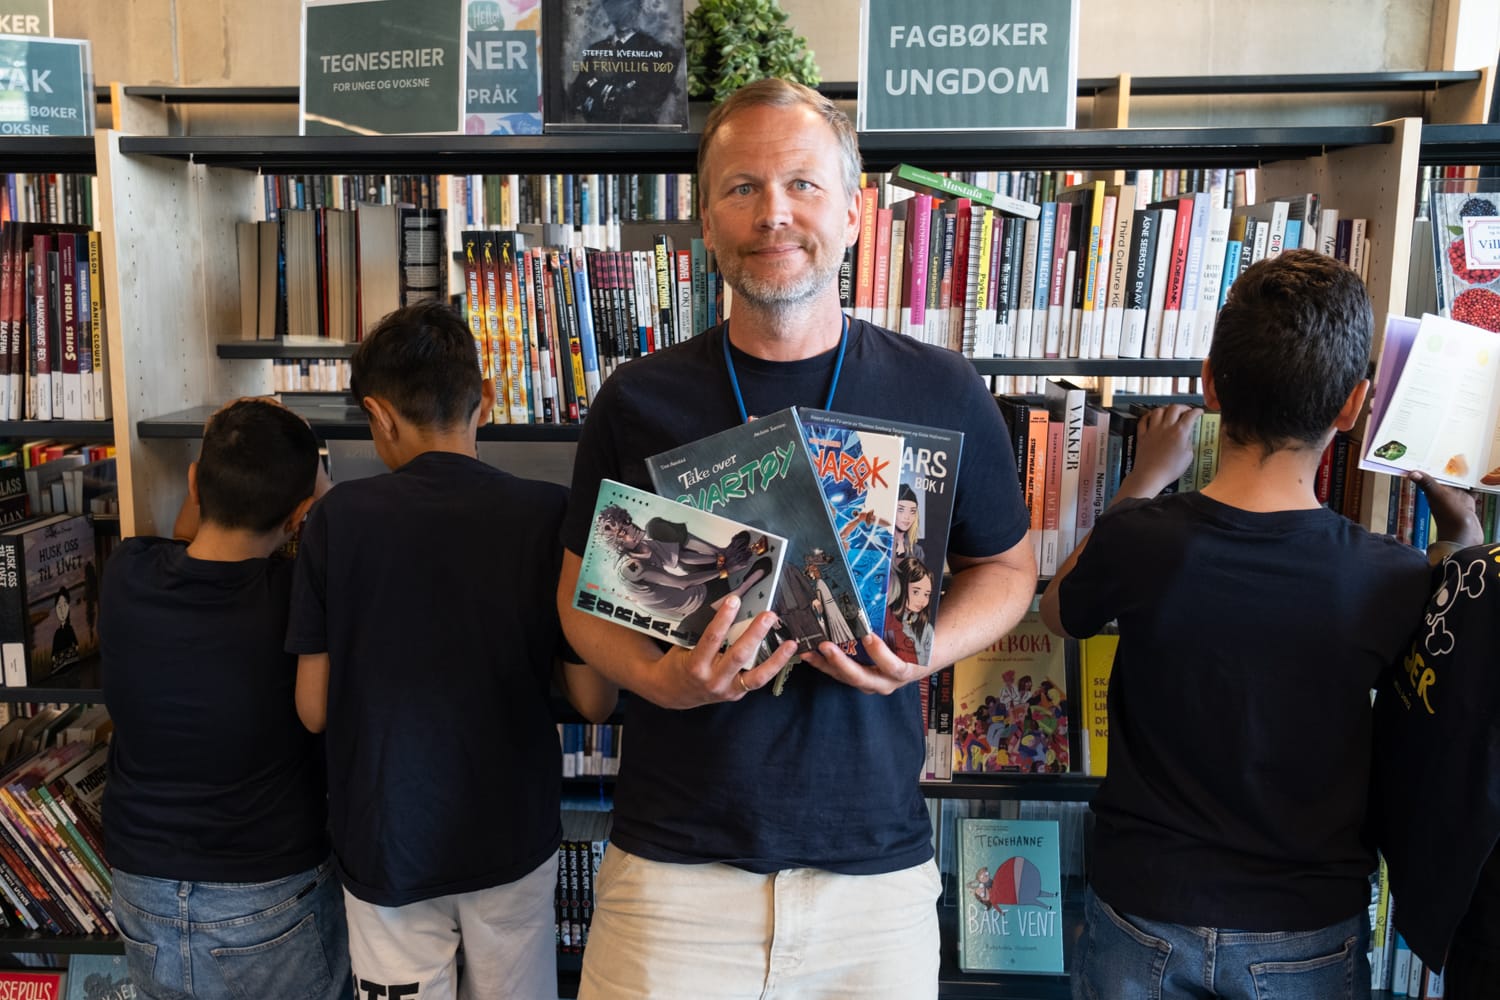 Skolebibliotekar Jørgen Gromstad viser hvilke bøker gutta har lest. Bak ham står gutta med ryggen til kameraet og leter etter nye bøker i bokhylla på biblioteket.